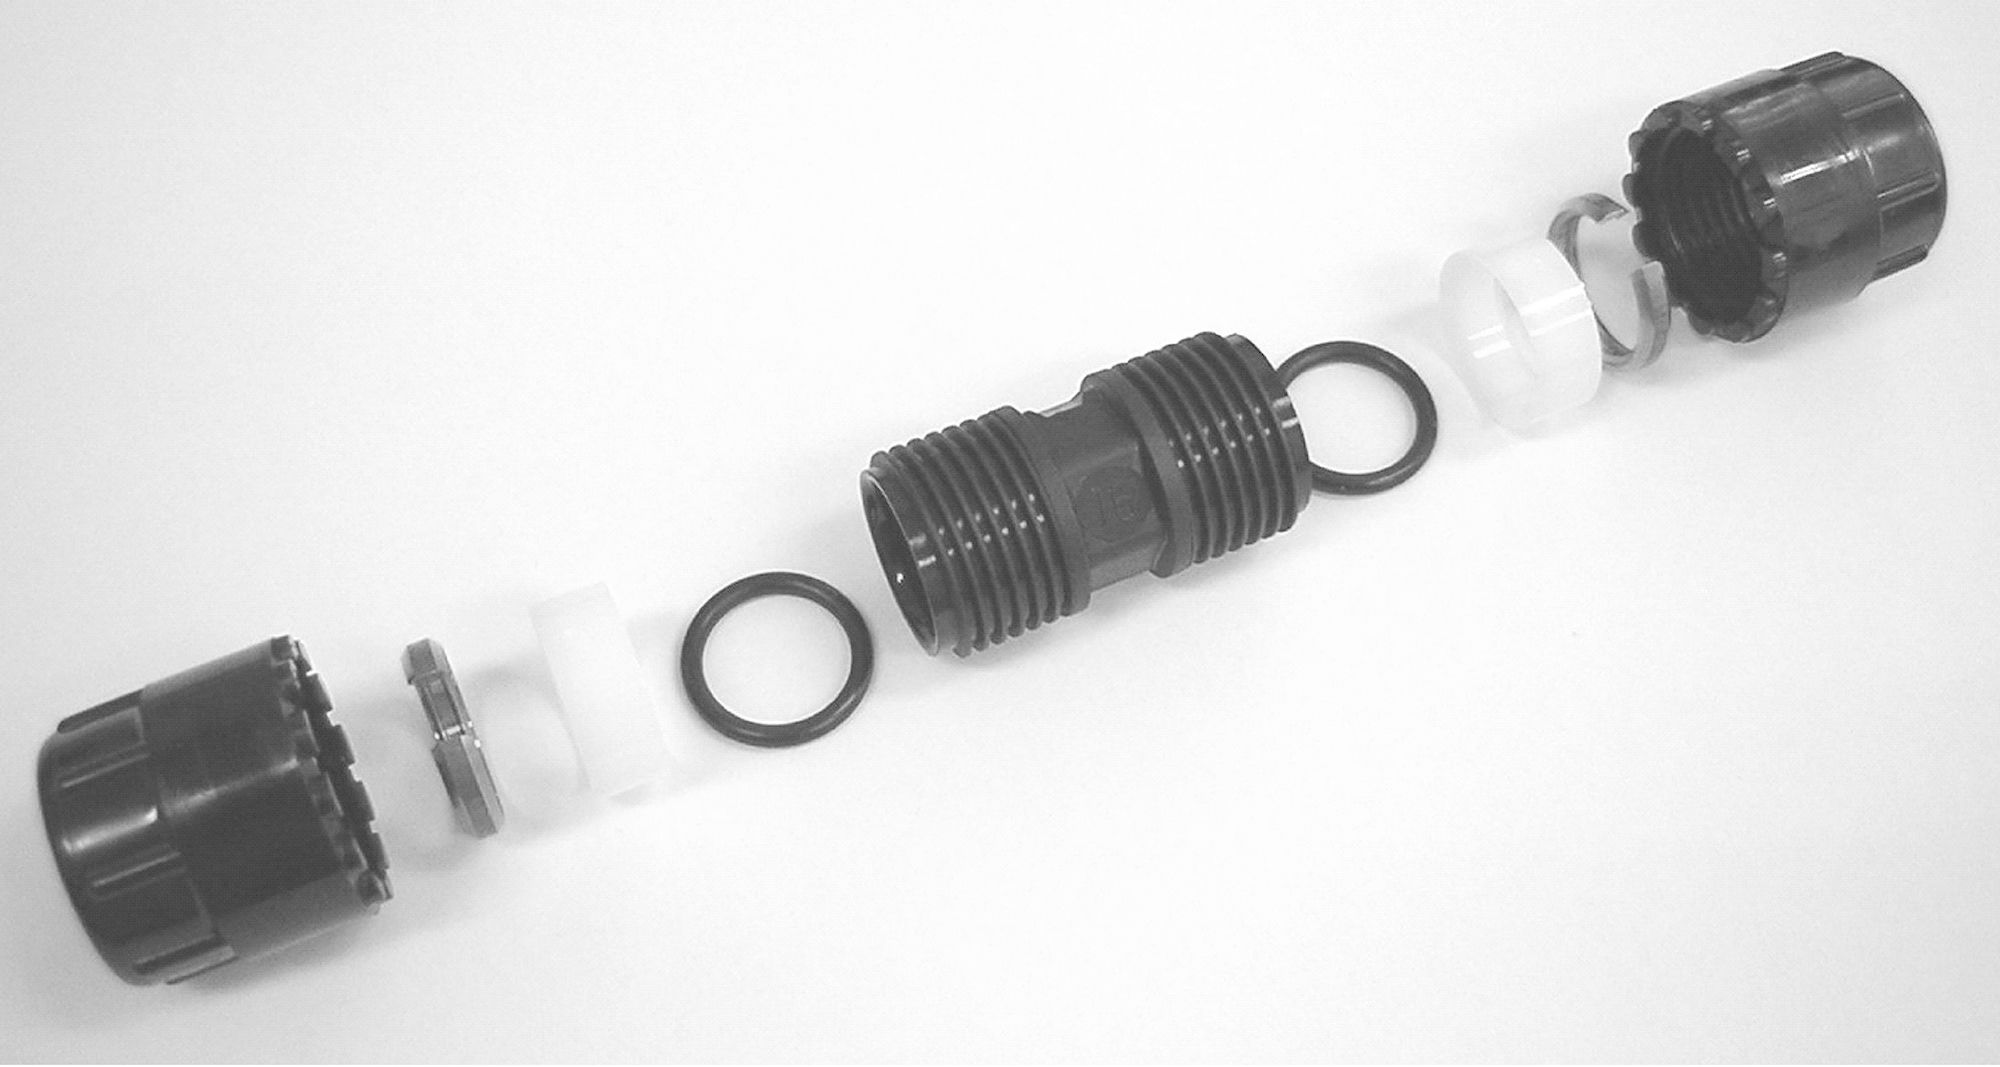 Simplast rechte koppeling 40 mm, zwart